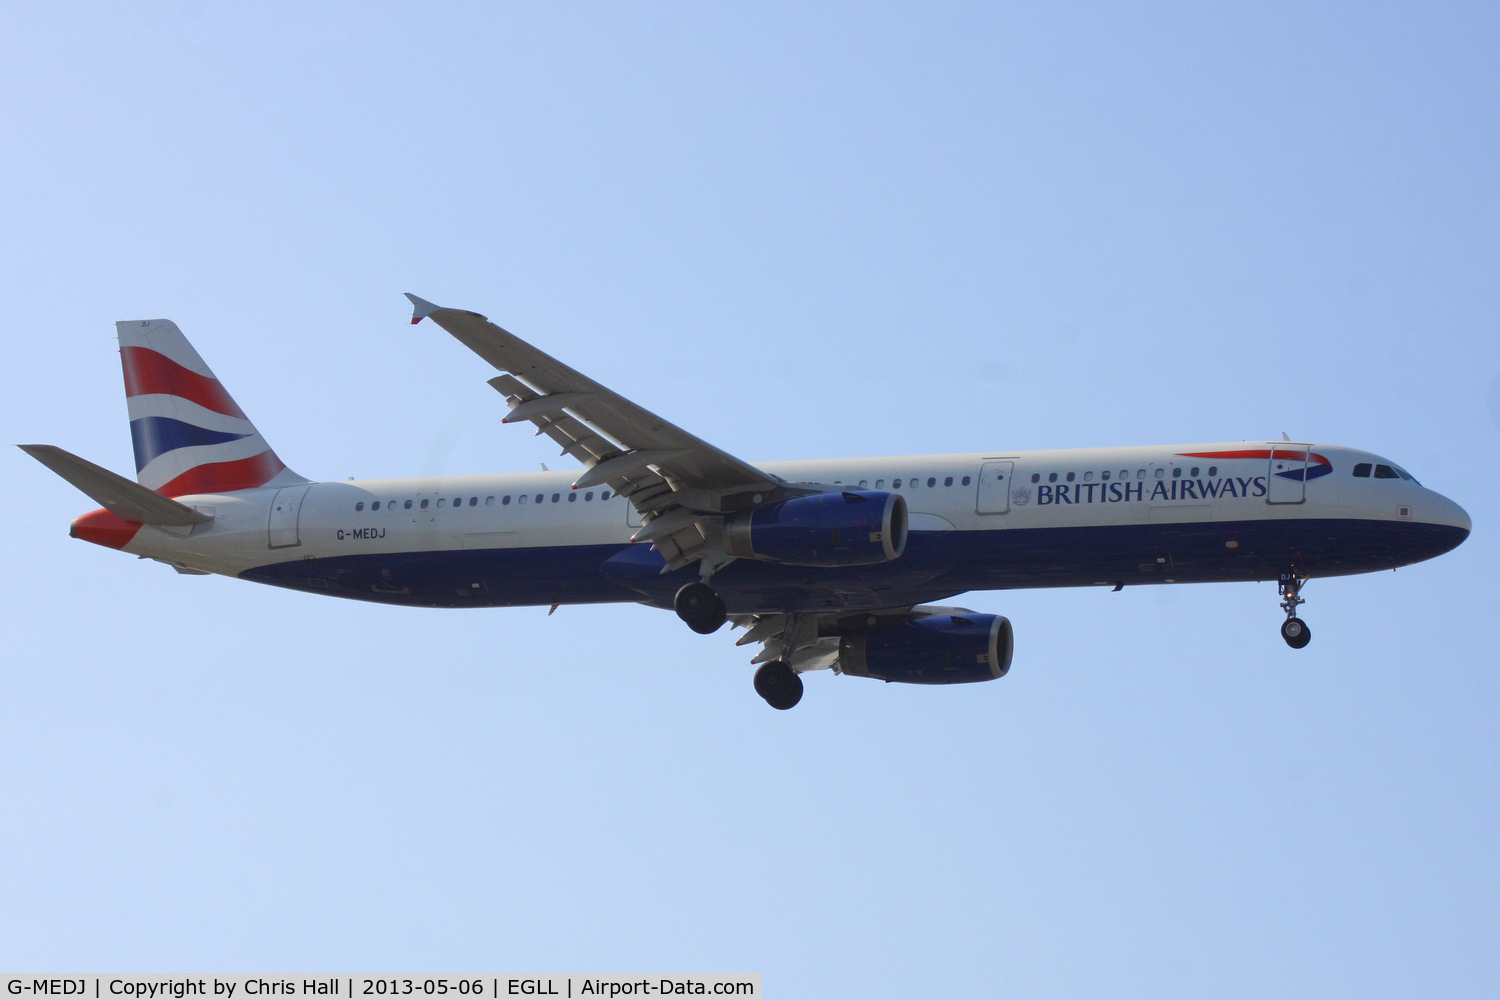 G-MEDJ, 2004 Airbus A321-231 C/N 2190, British Airways